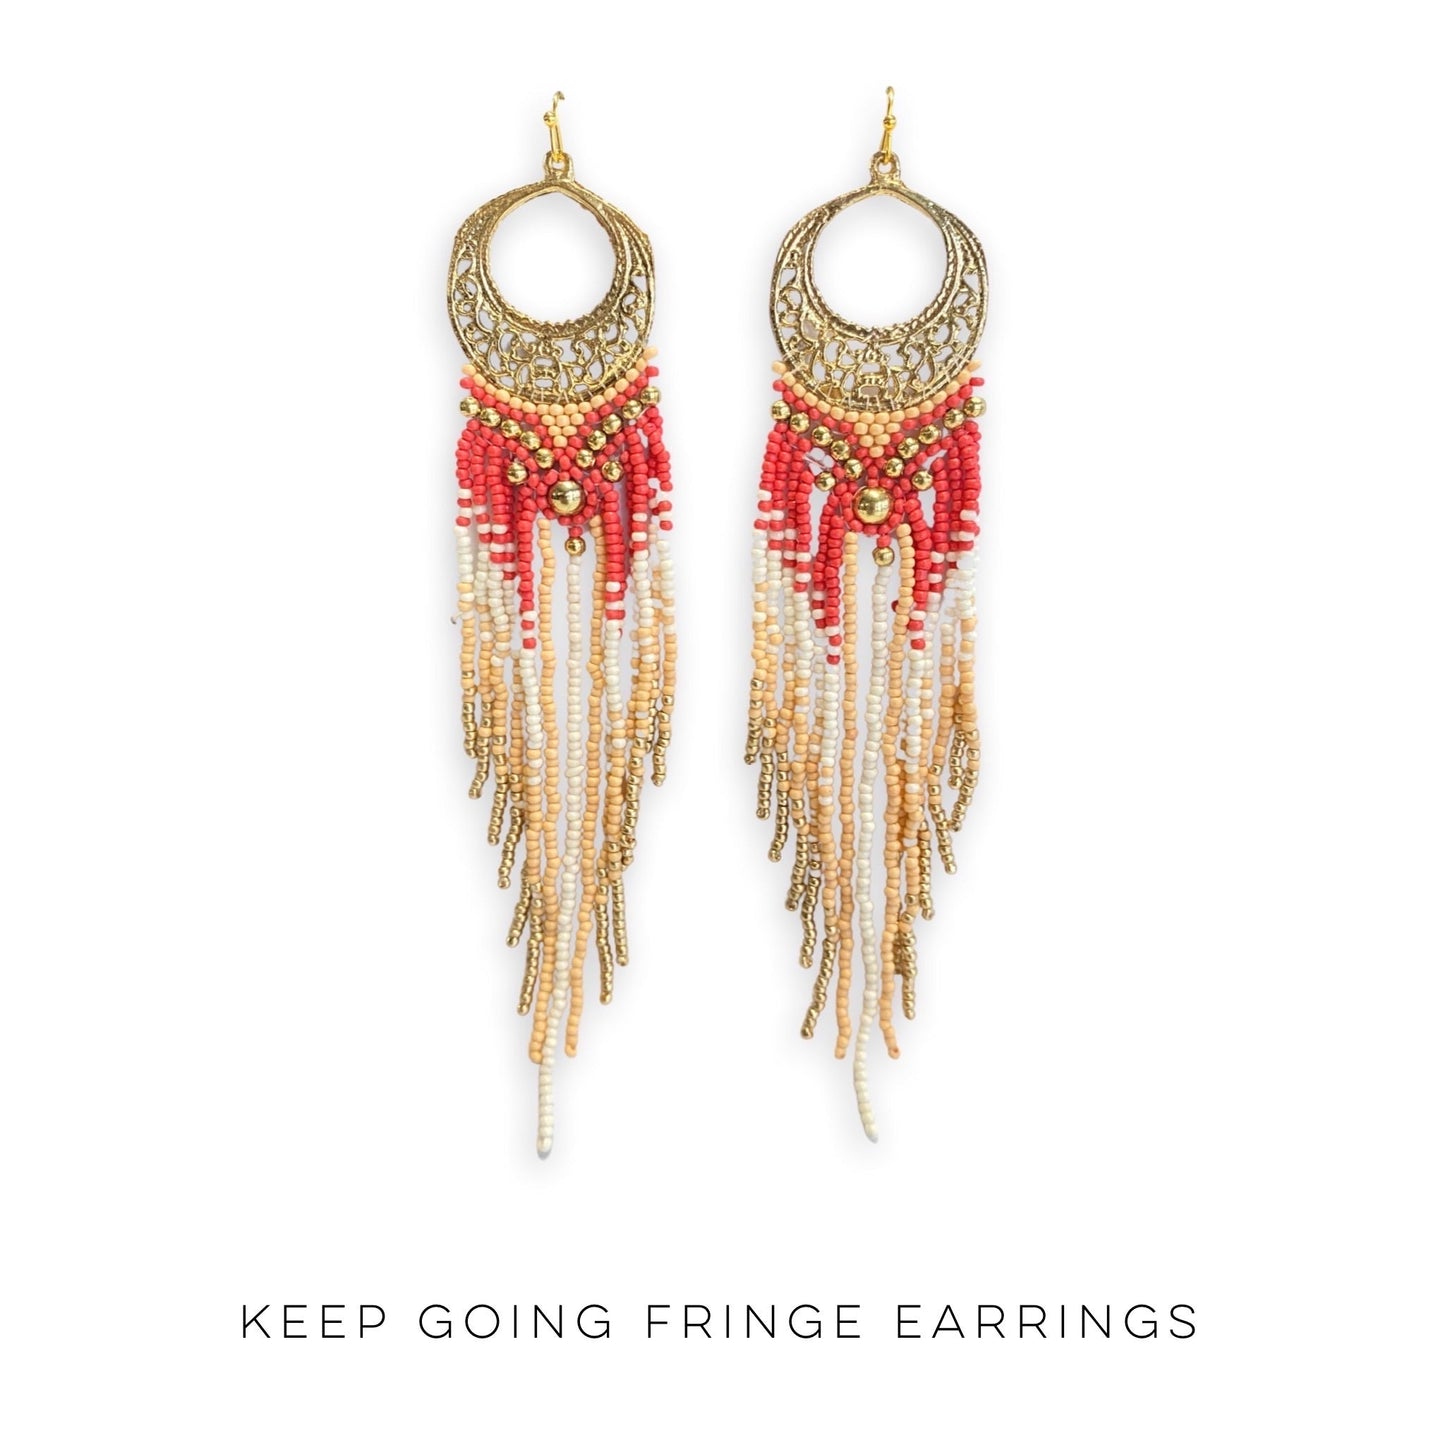 Keep Going Fringe Earrings